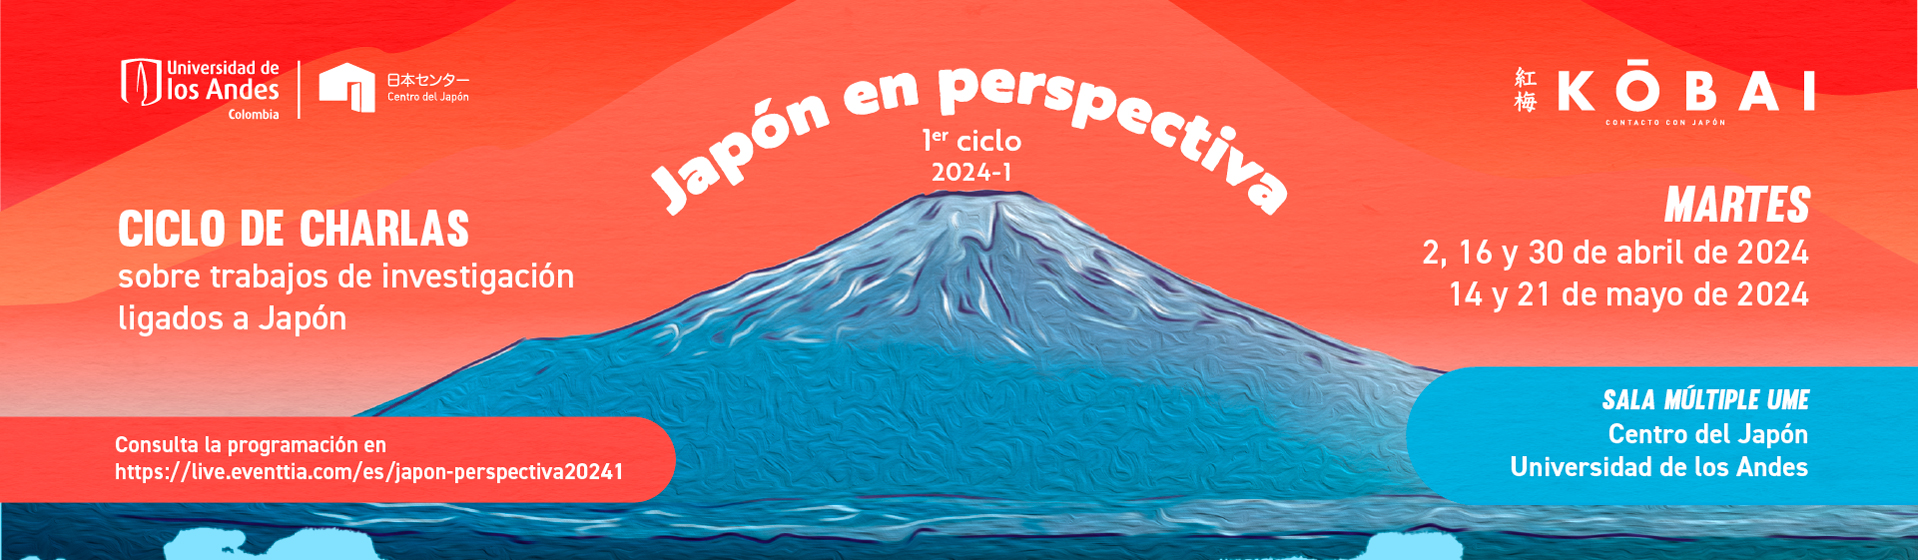 Japón en Perspectiva: Ciclo de charlas sobre trabajos de investigación ligados a Japón